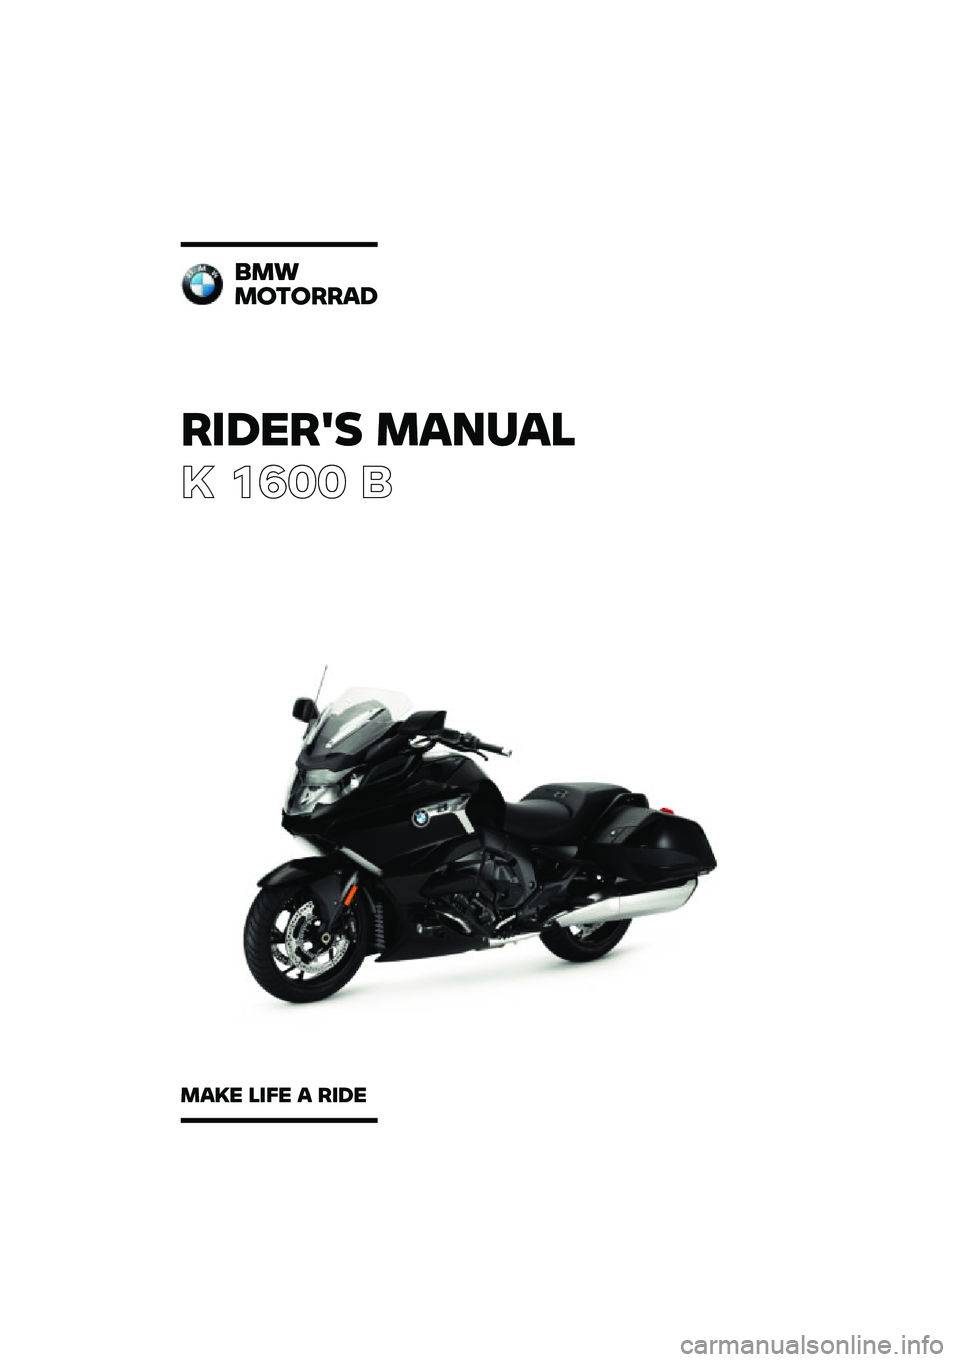 BMW MOTORRAD K 1600 B 2020  Riders Manual (in English) ������� �\b�	�
��	�\f
� ���� �	
�
�\b�
�\b������	�
�\b�	�� �\f��� �	 ���� 